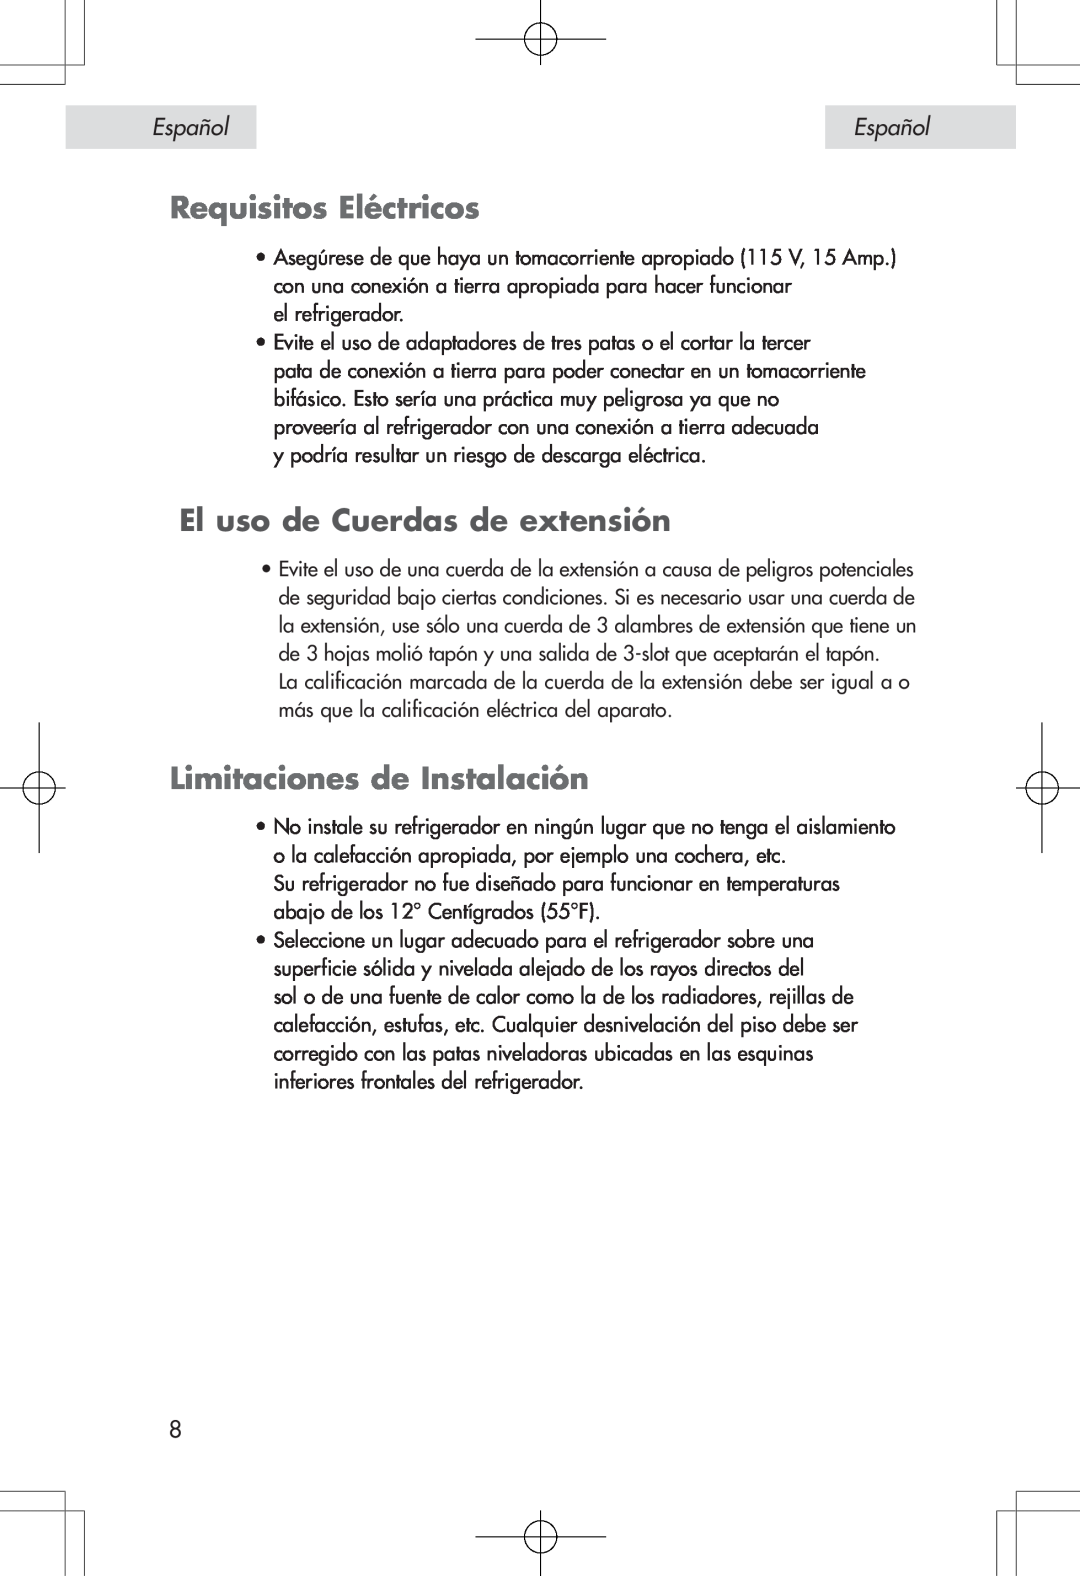 Haier HSE04WNA, HSP04WNA Requisitos Eléctricos, El uso de Cuerdas de extensión, Limitaciones de Instalación, Español 